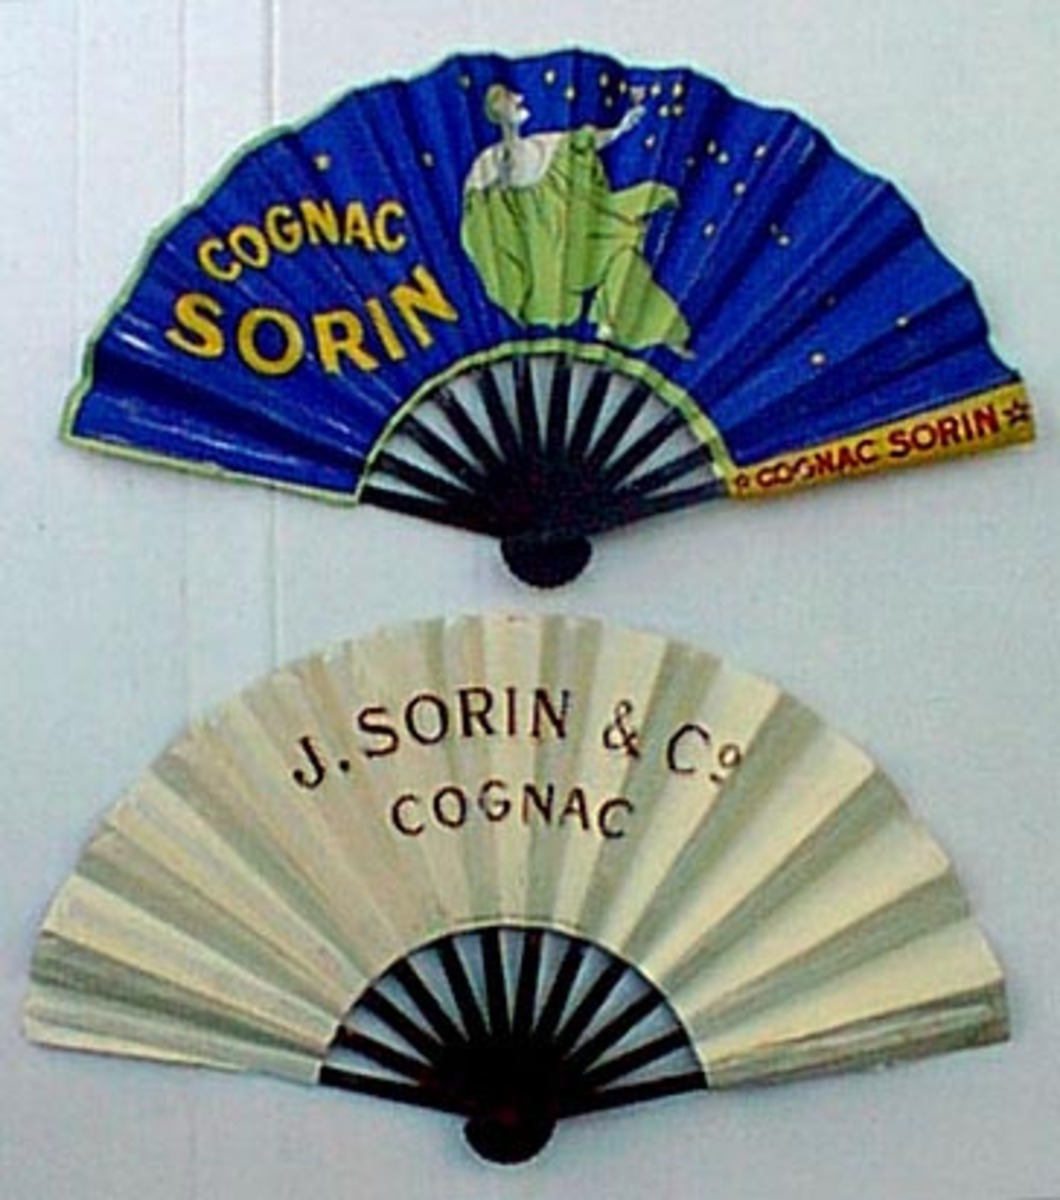 Original Vintage Advertising Fan Cognac Sorin